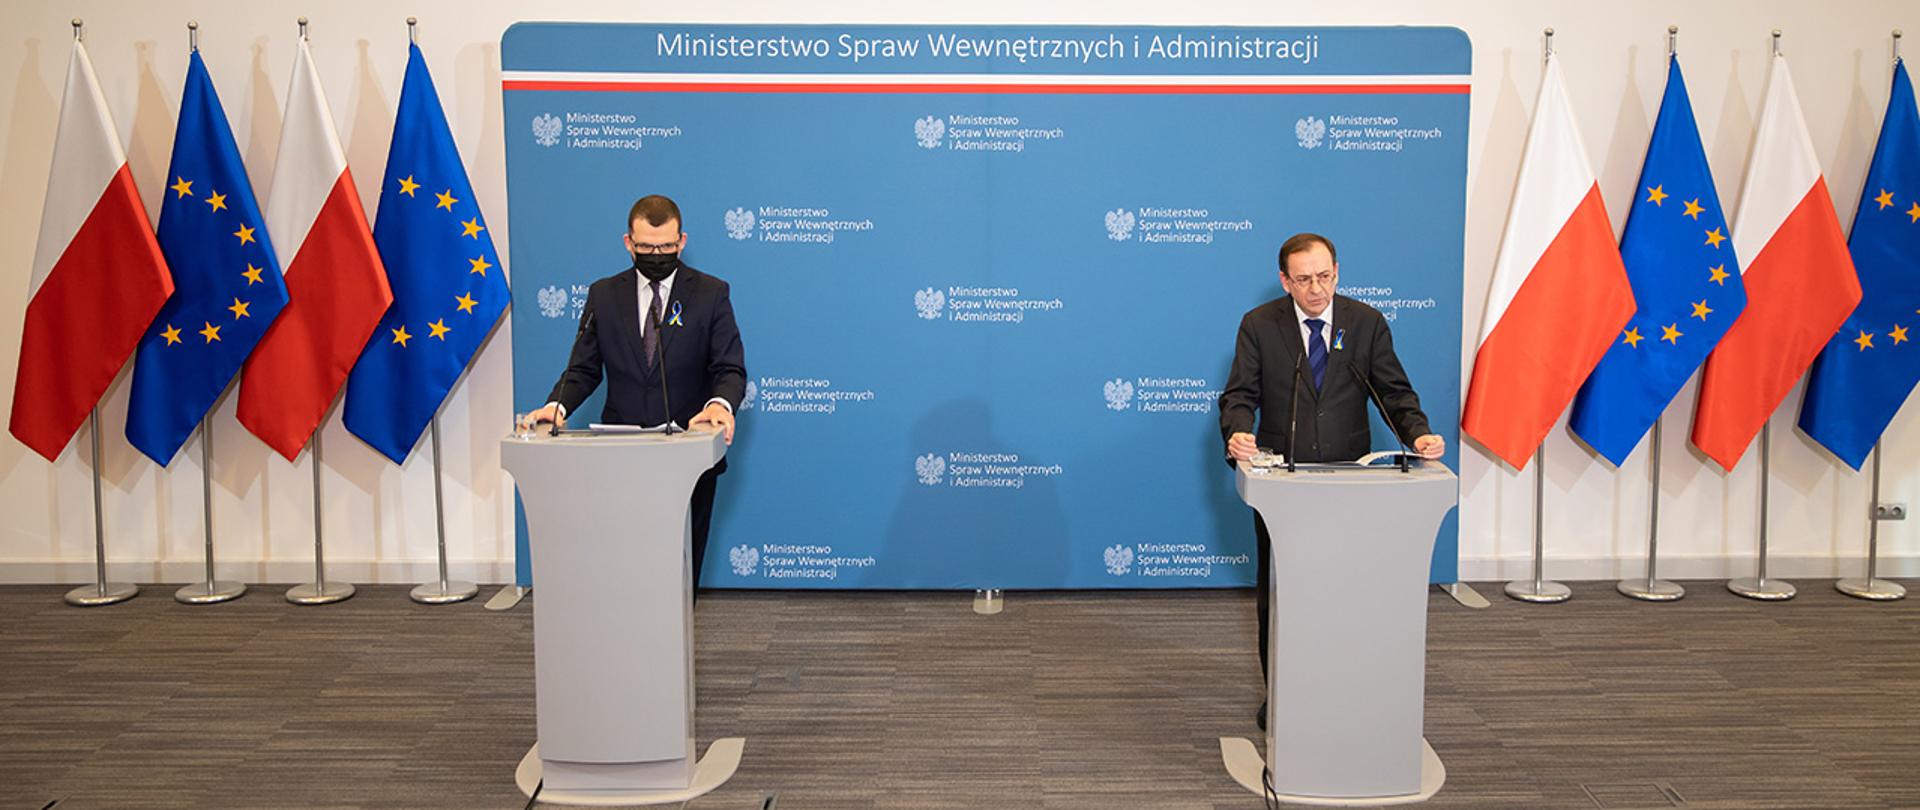 Minister Mariusz Kamiński oraz Paweł Szefenaker stojący przy mównicach podczas konferencji prasowej w MSWiA.